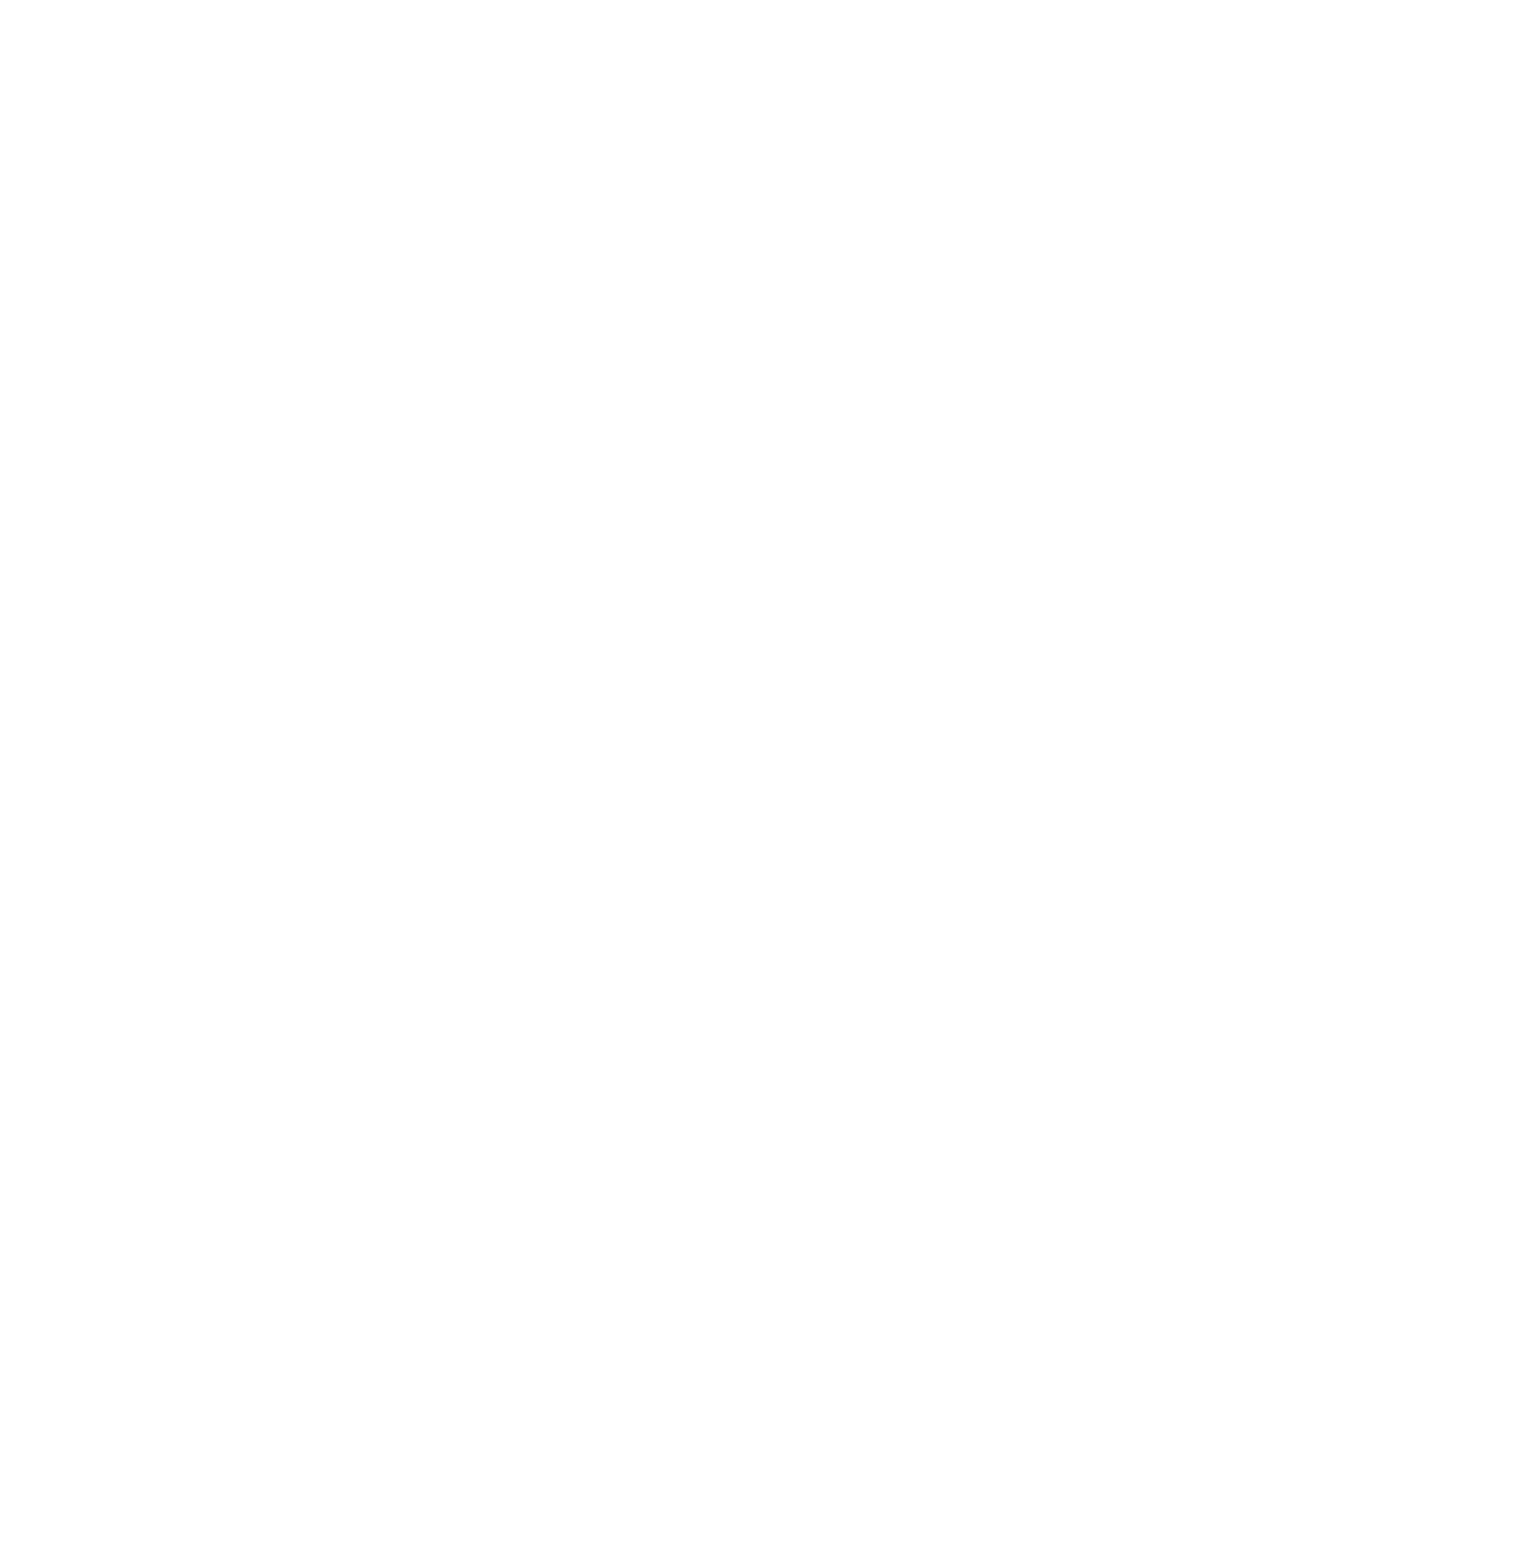 Tenet Healthcare logo pour fonds sombres (PNG transparent)